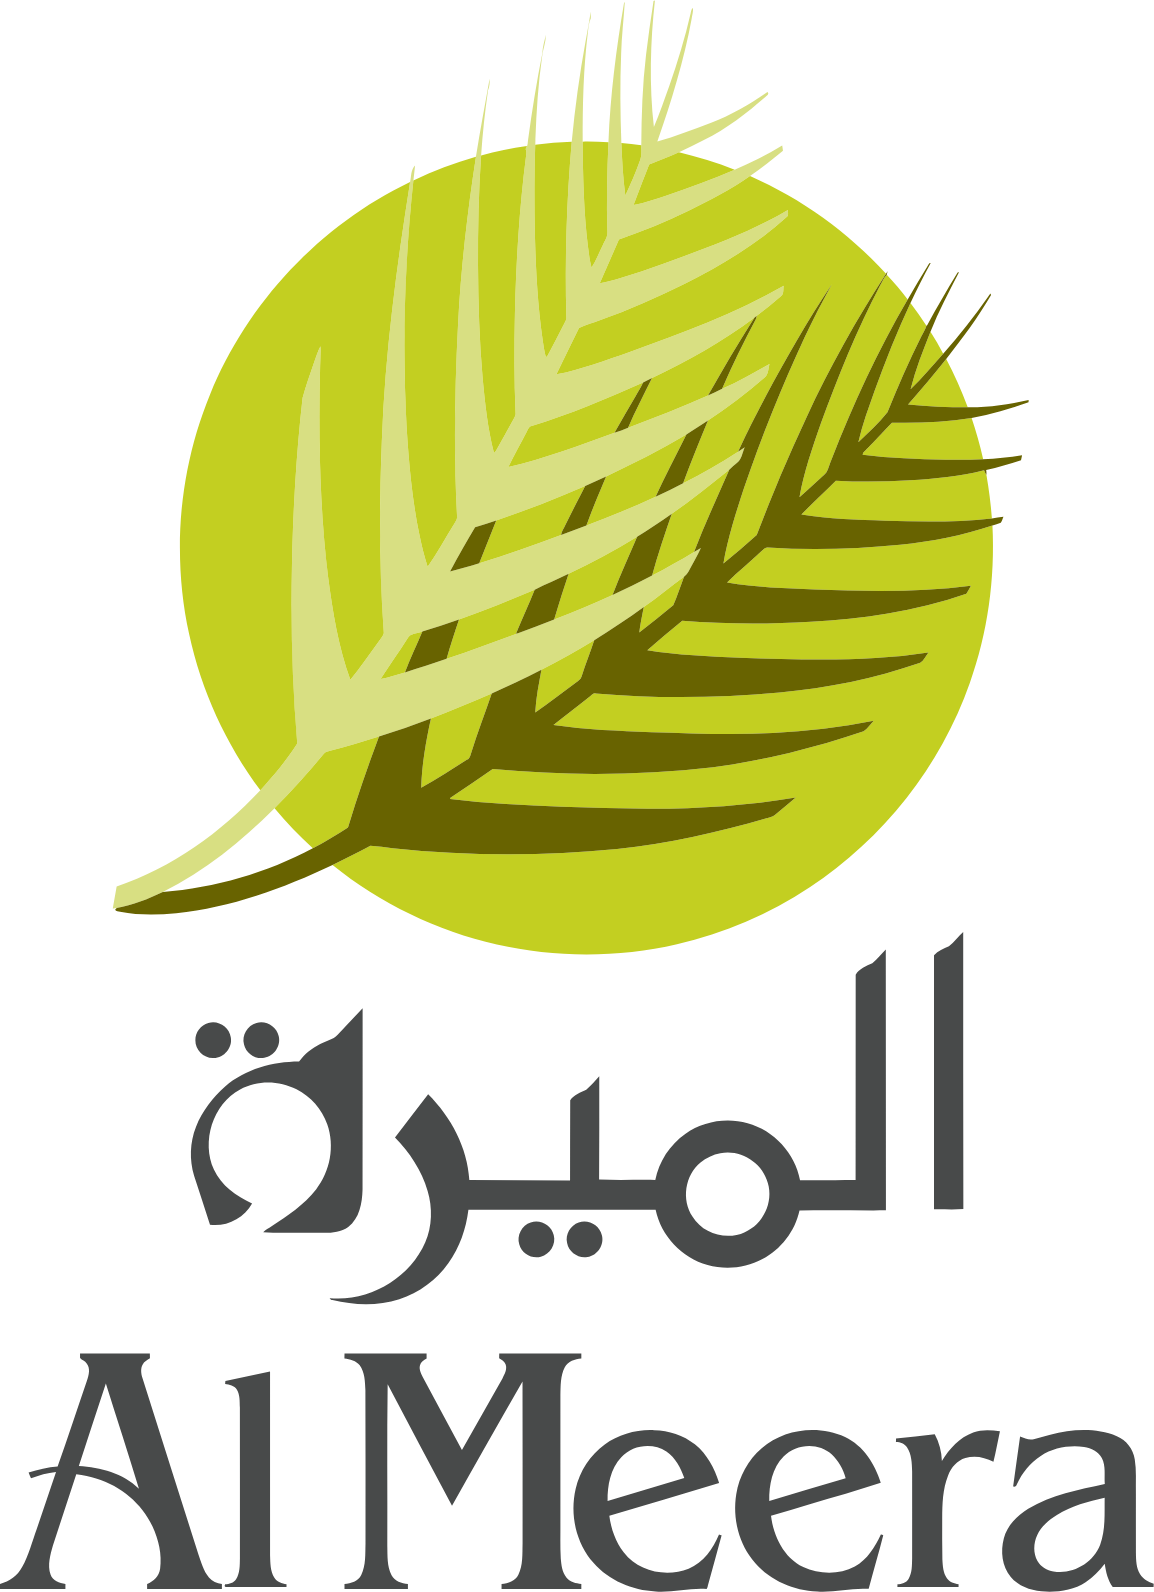 Al Meera Consumer Goods Company logo large (transparent PNG)